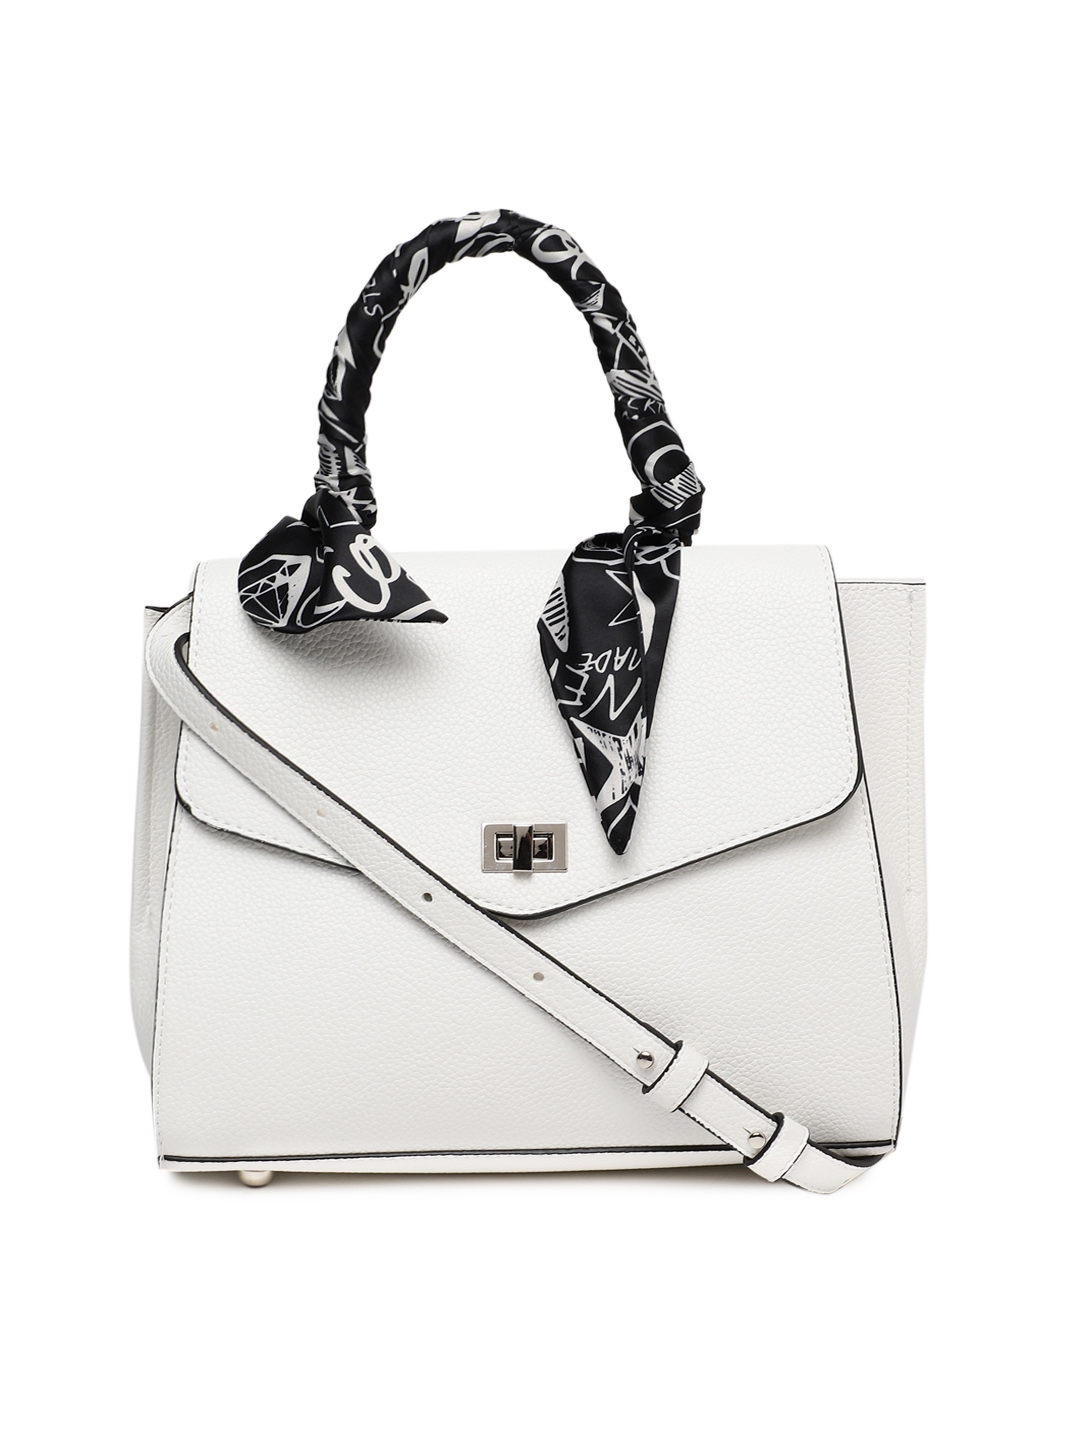 Buy Steve Madden White Textured Satchel - Handbags for Women 2972540 ...